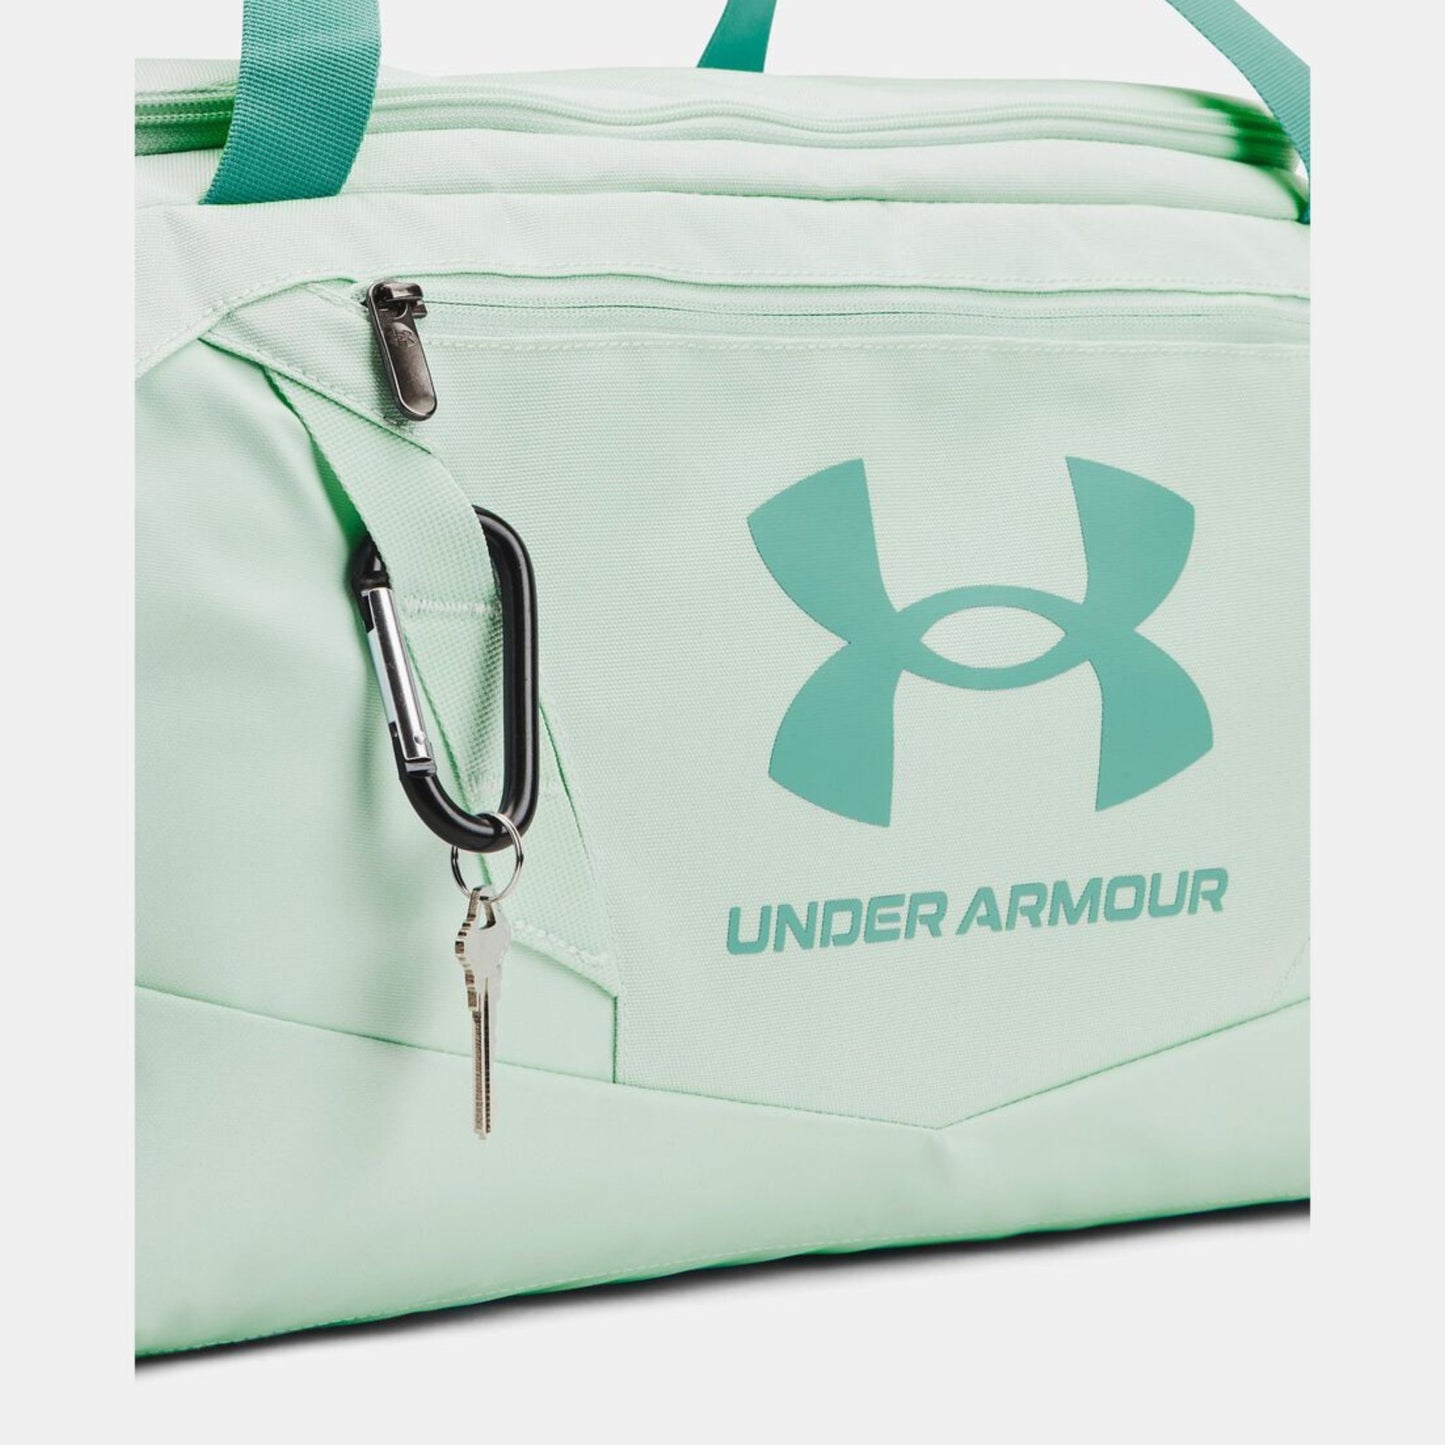 Under Armour-Under Armour UA Undeniable 5.0 SM Duffle Bag - Brandat Outlet